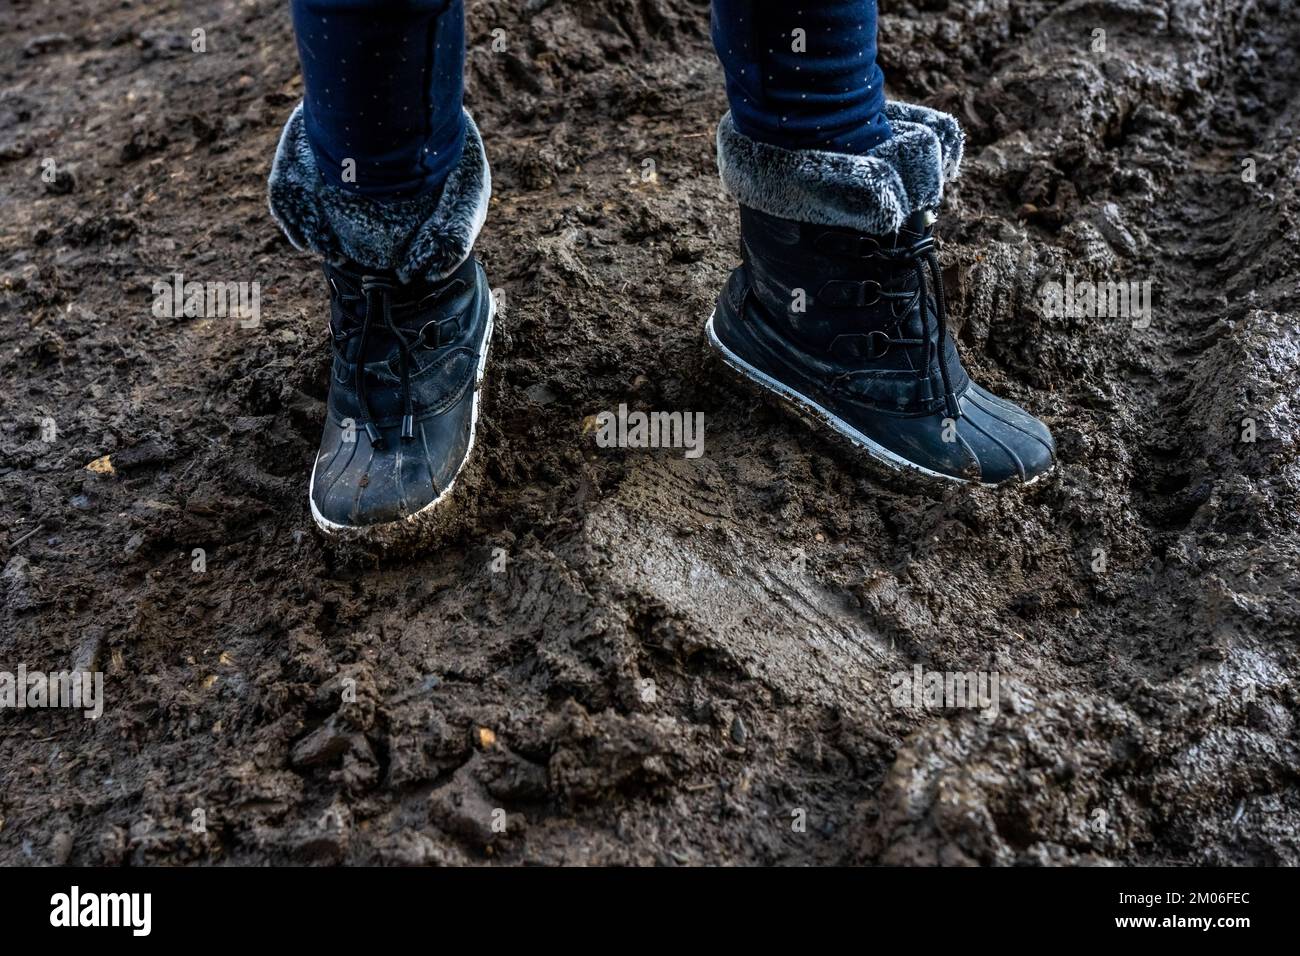 Kinderfüße in dreckigen, verschmutzten Stiefeln, schlammiger Hintergrund. Schmutzige warme Stiefel im Schlamm. Fotos in hoher Qualität Stockfoto